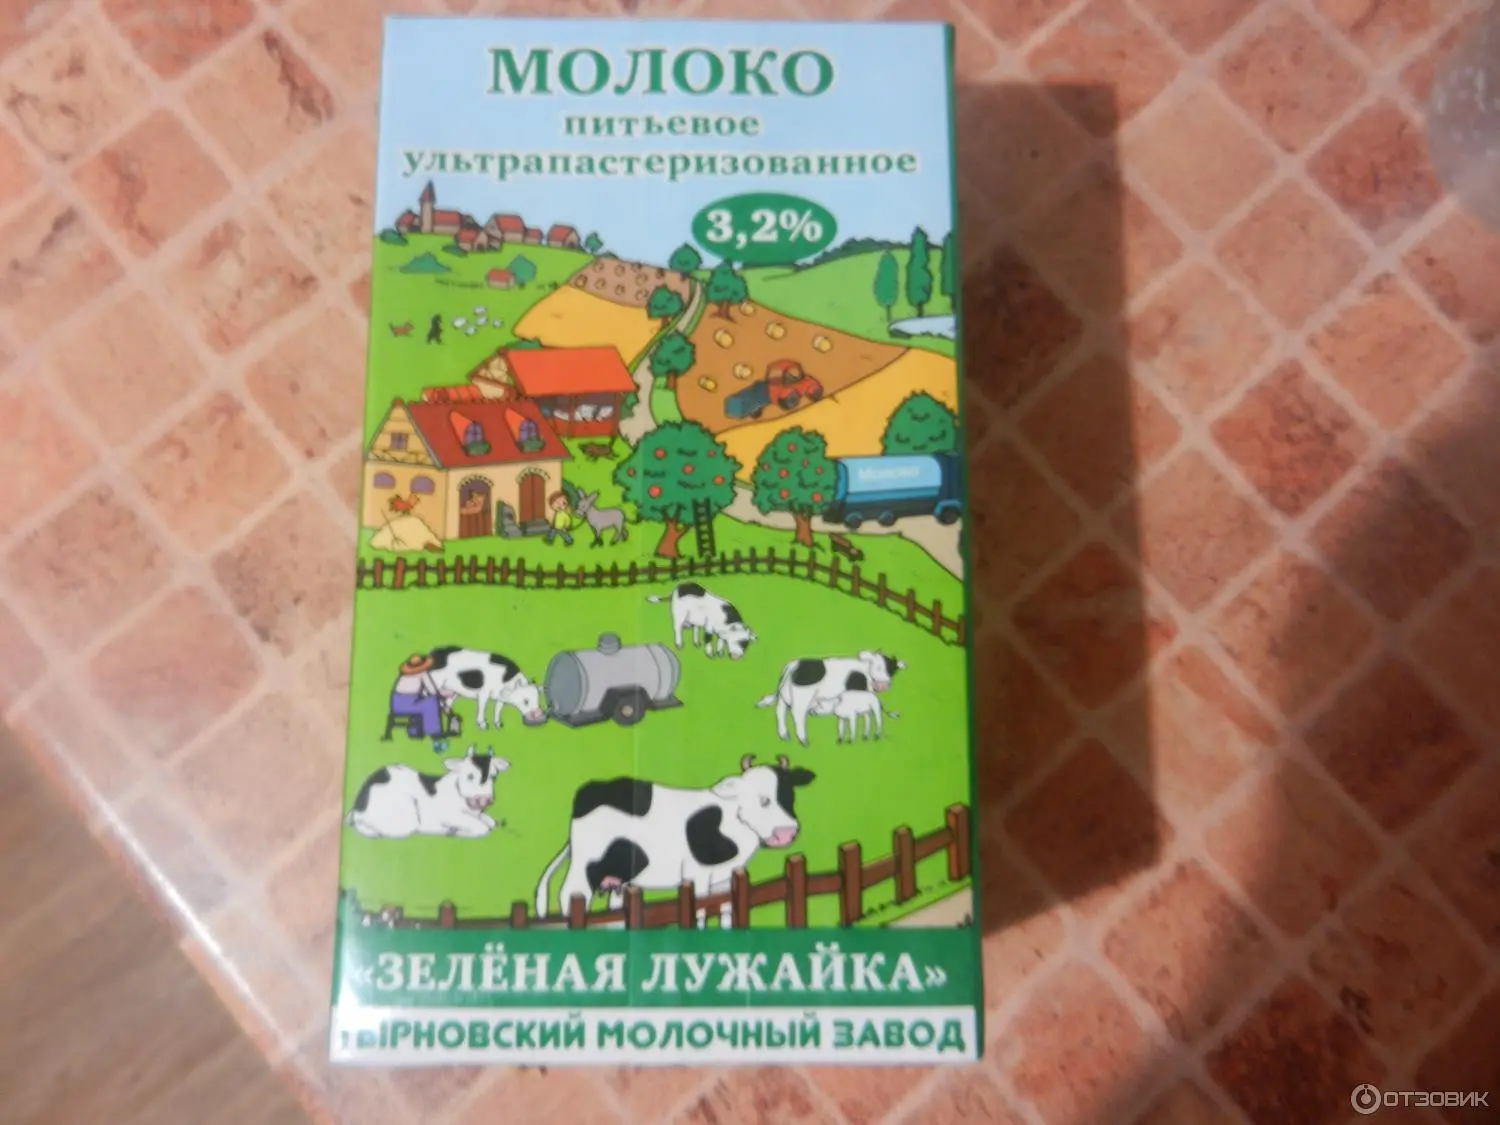 фотография продукта Молоко Зелёная лужайка.